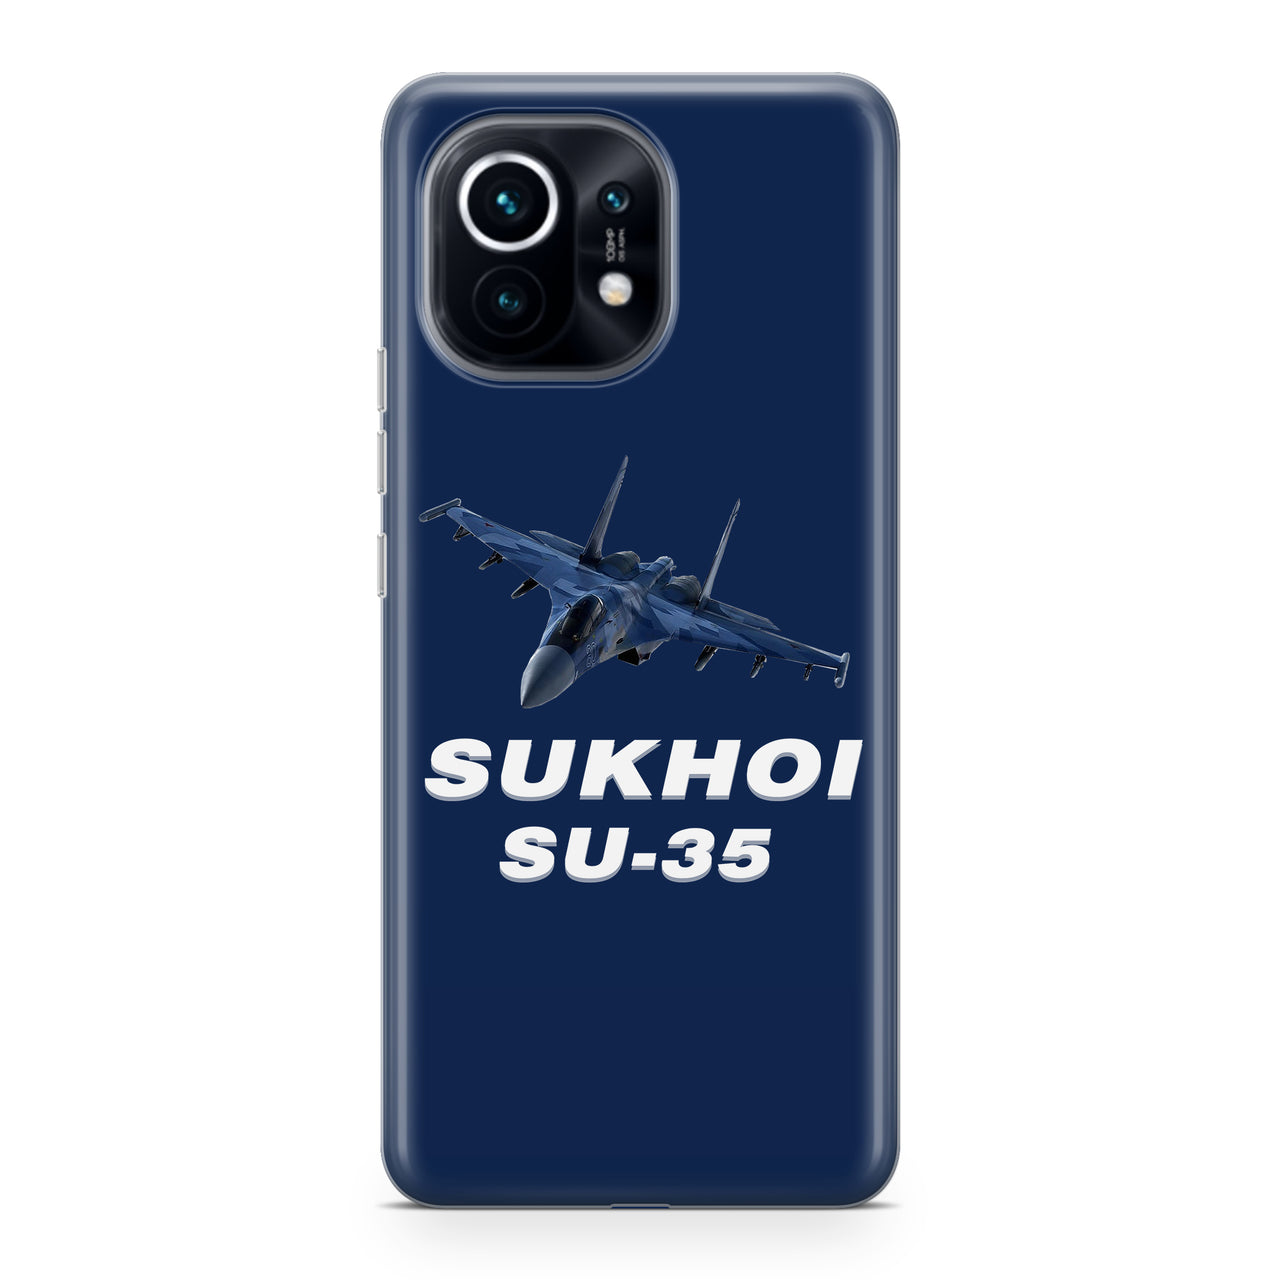 The Sukhoi SU-35 Designed Xiaomi Cases